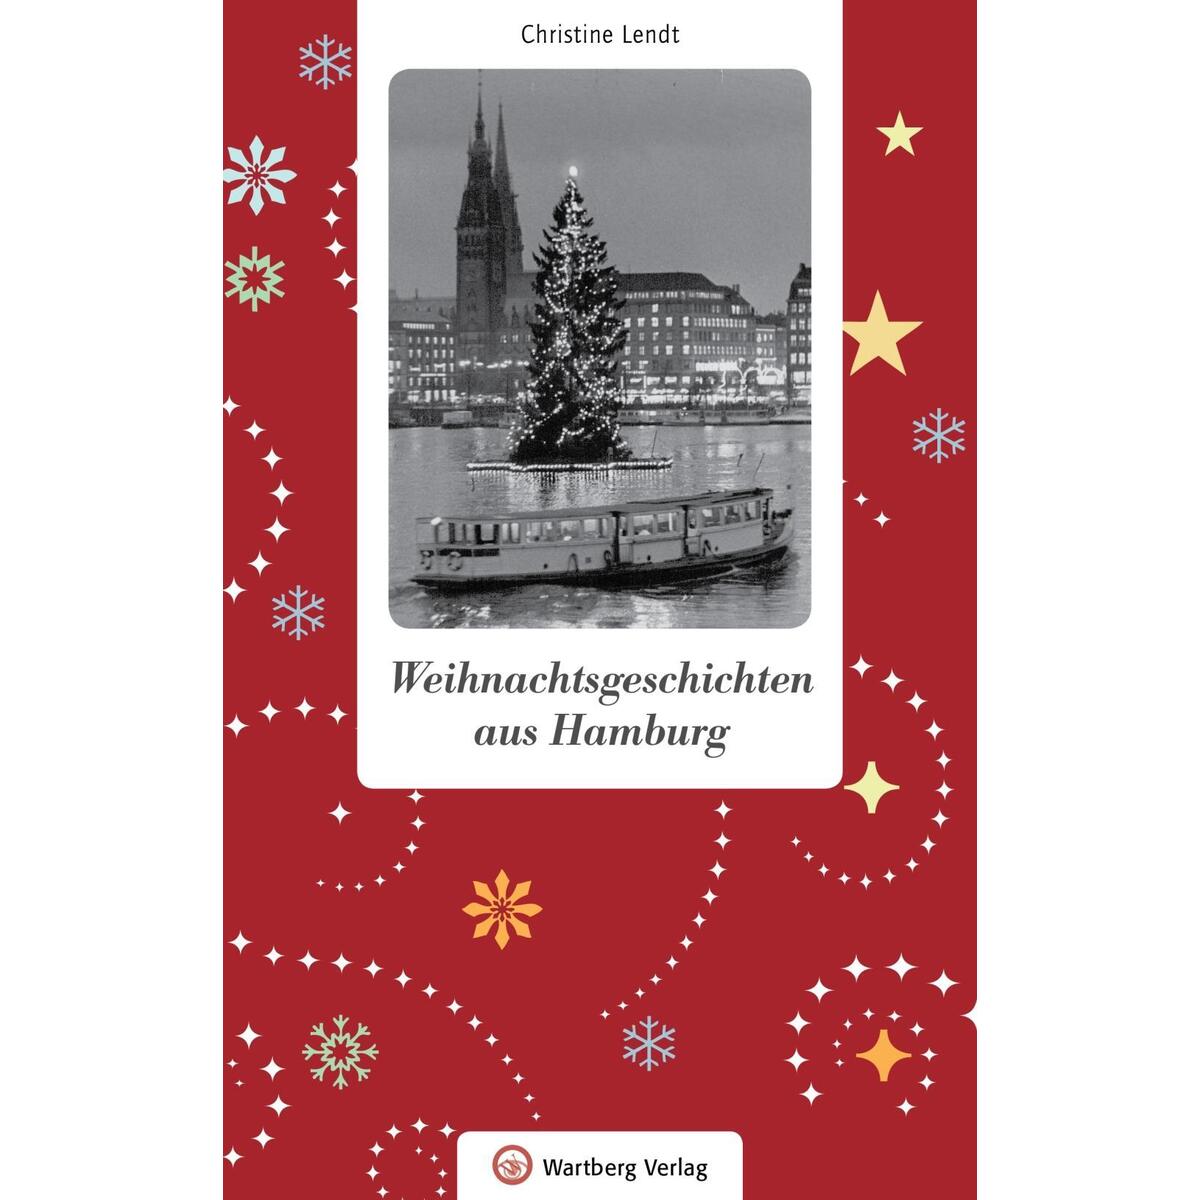 Weihnachtsgeschichten aus Hamburg von Wartberg Verlag